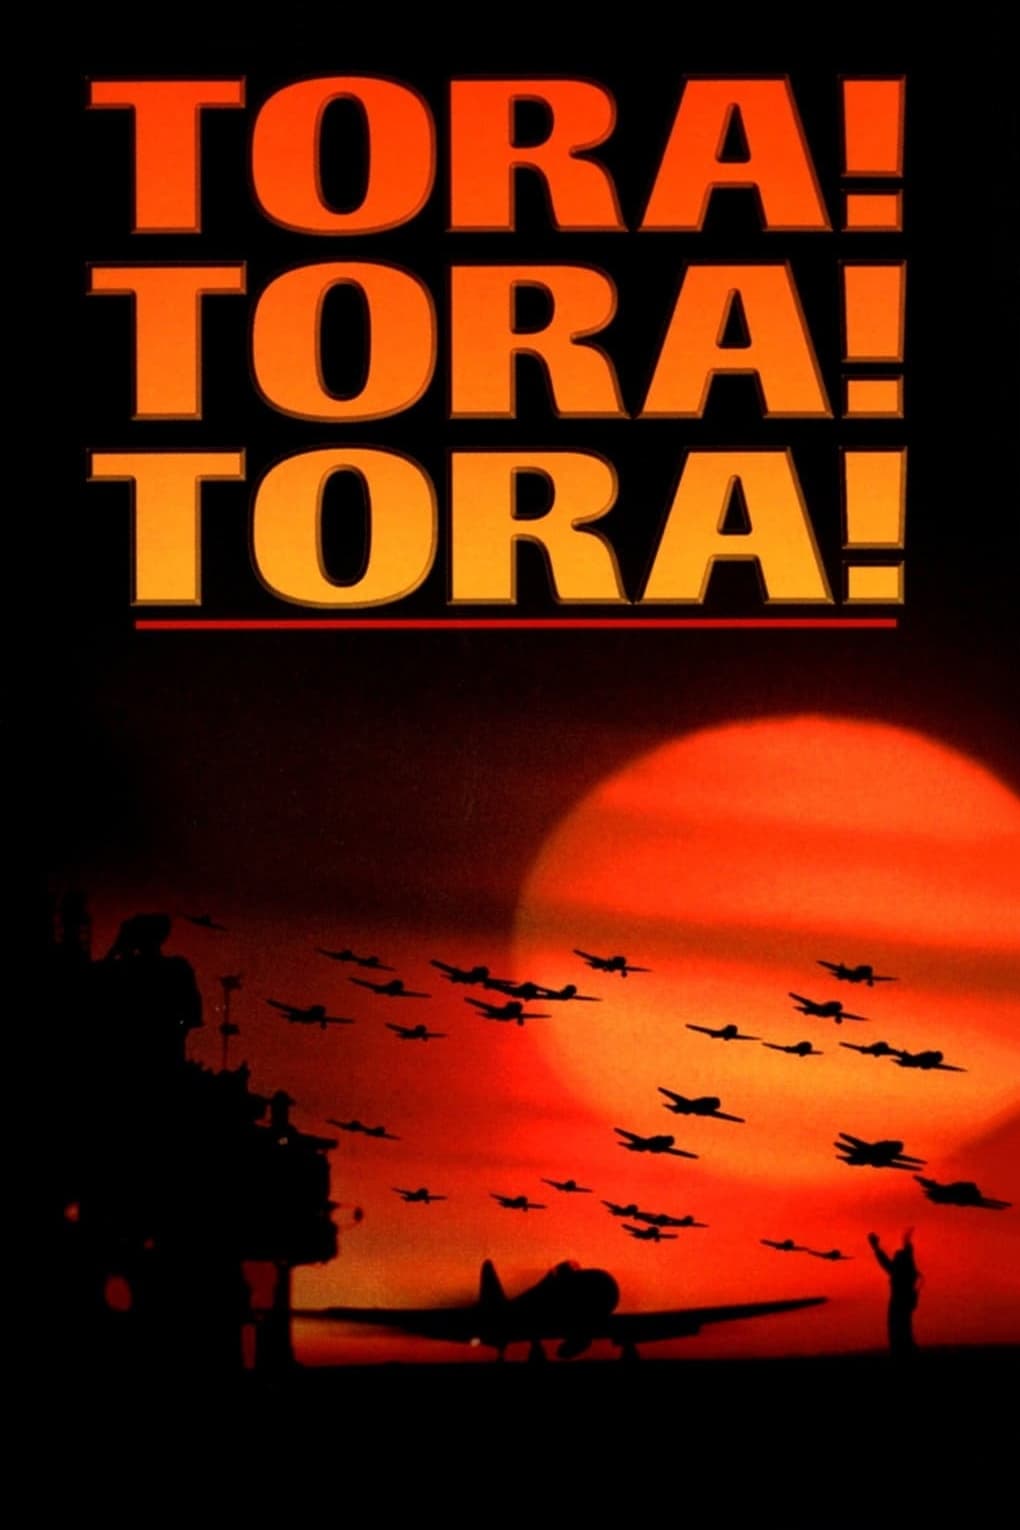 Trận Chiến Trân Châu Cảng - Tora! Tora! Tora! (1970)